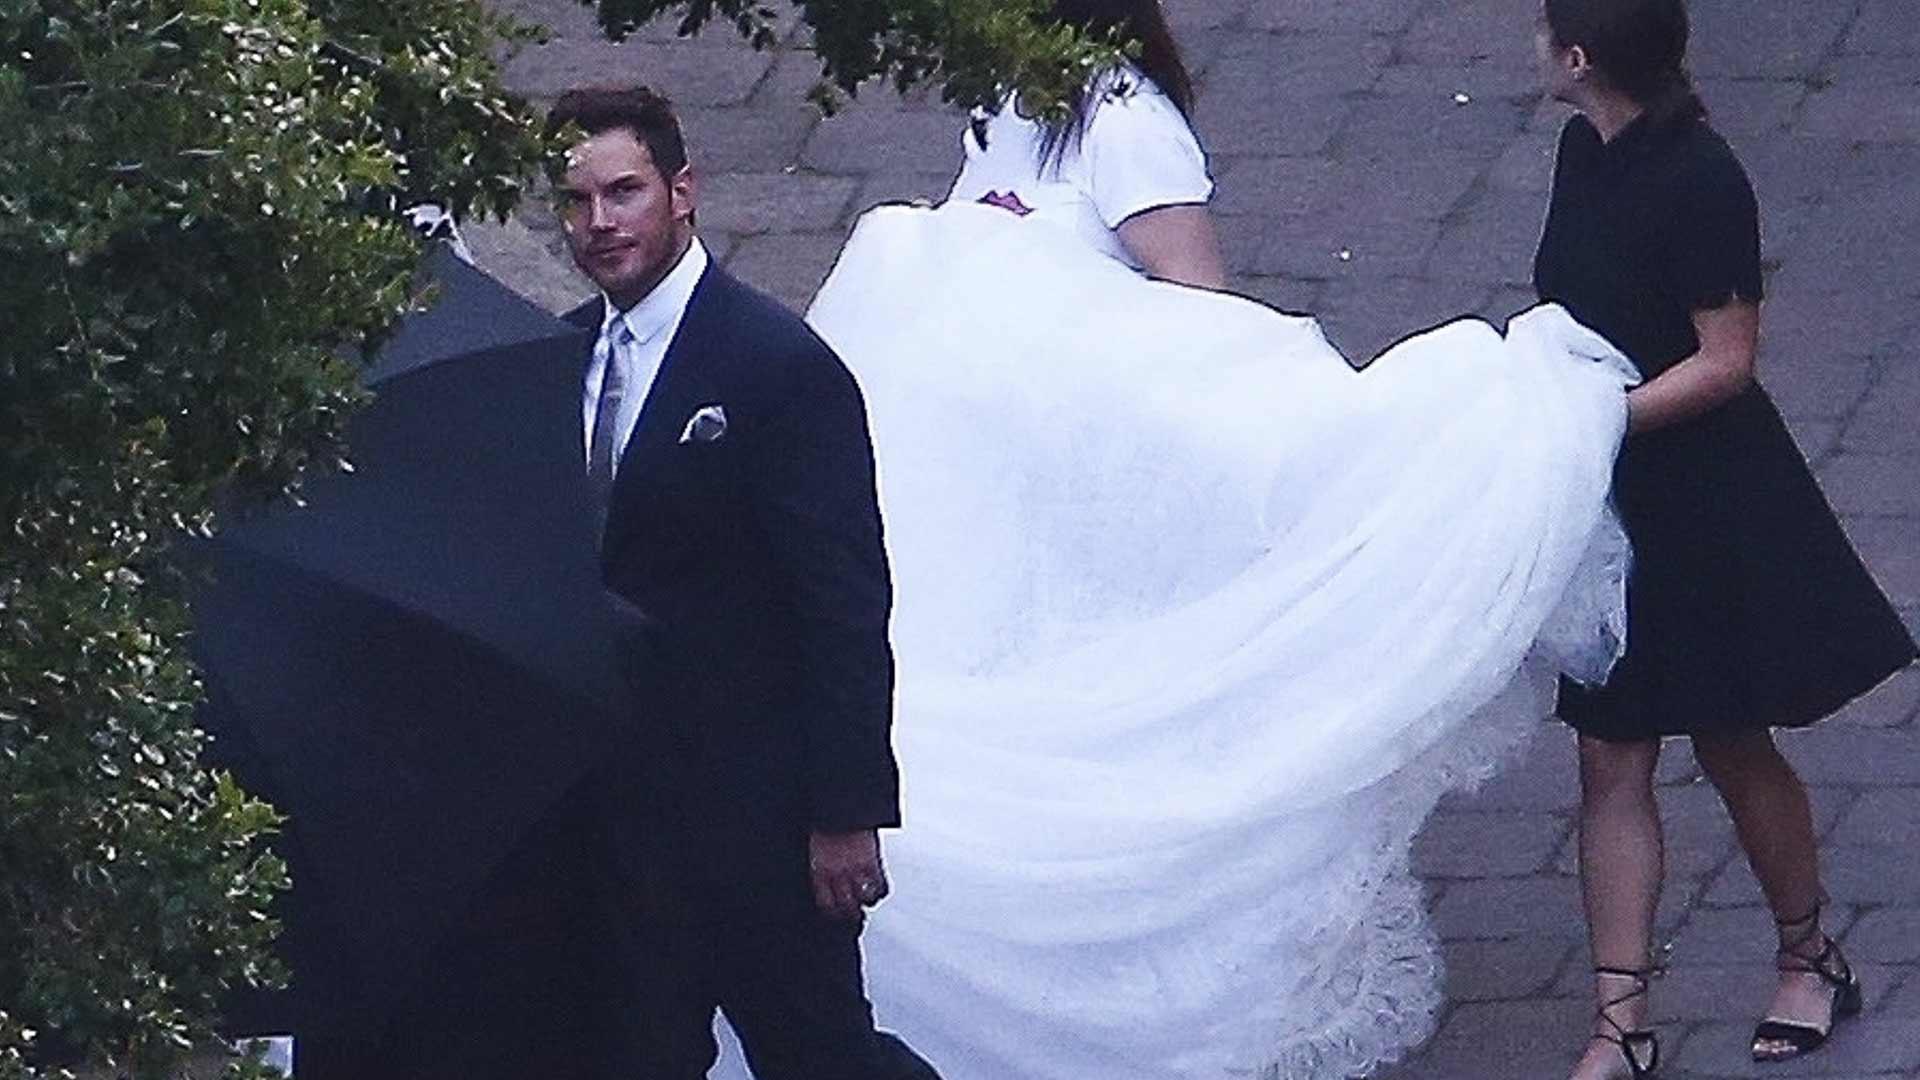 Chris Pratt and Katherine Schwarzenegger Are Married!